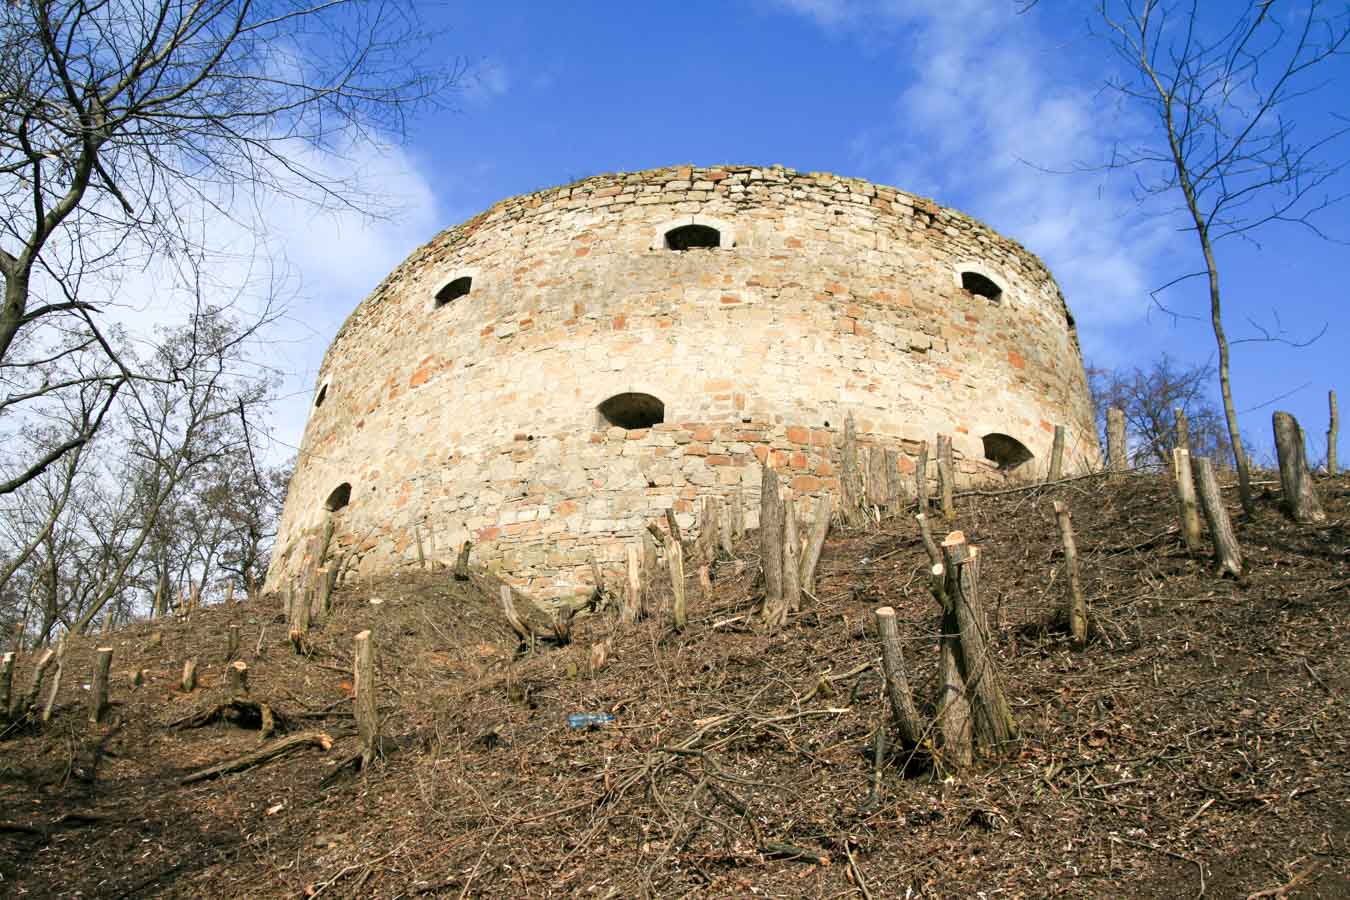 Wieża jednej z najpotężniejszej z fortec w I Rzeczpospolitej - w Trembowli